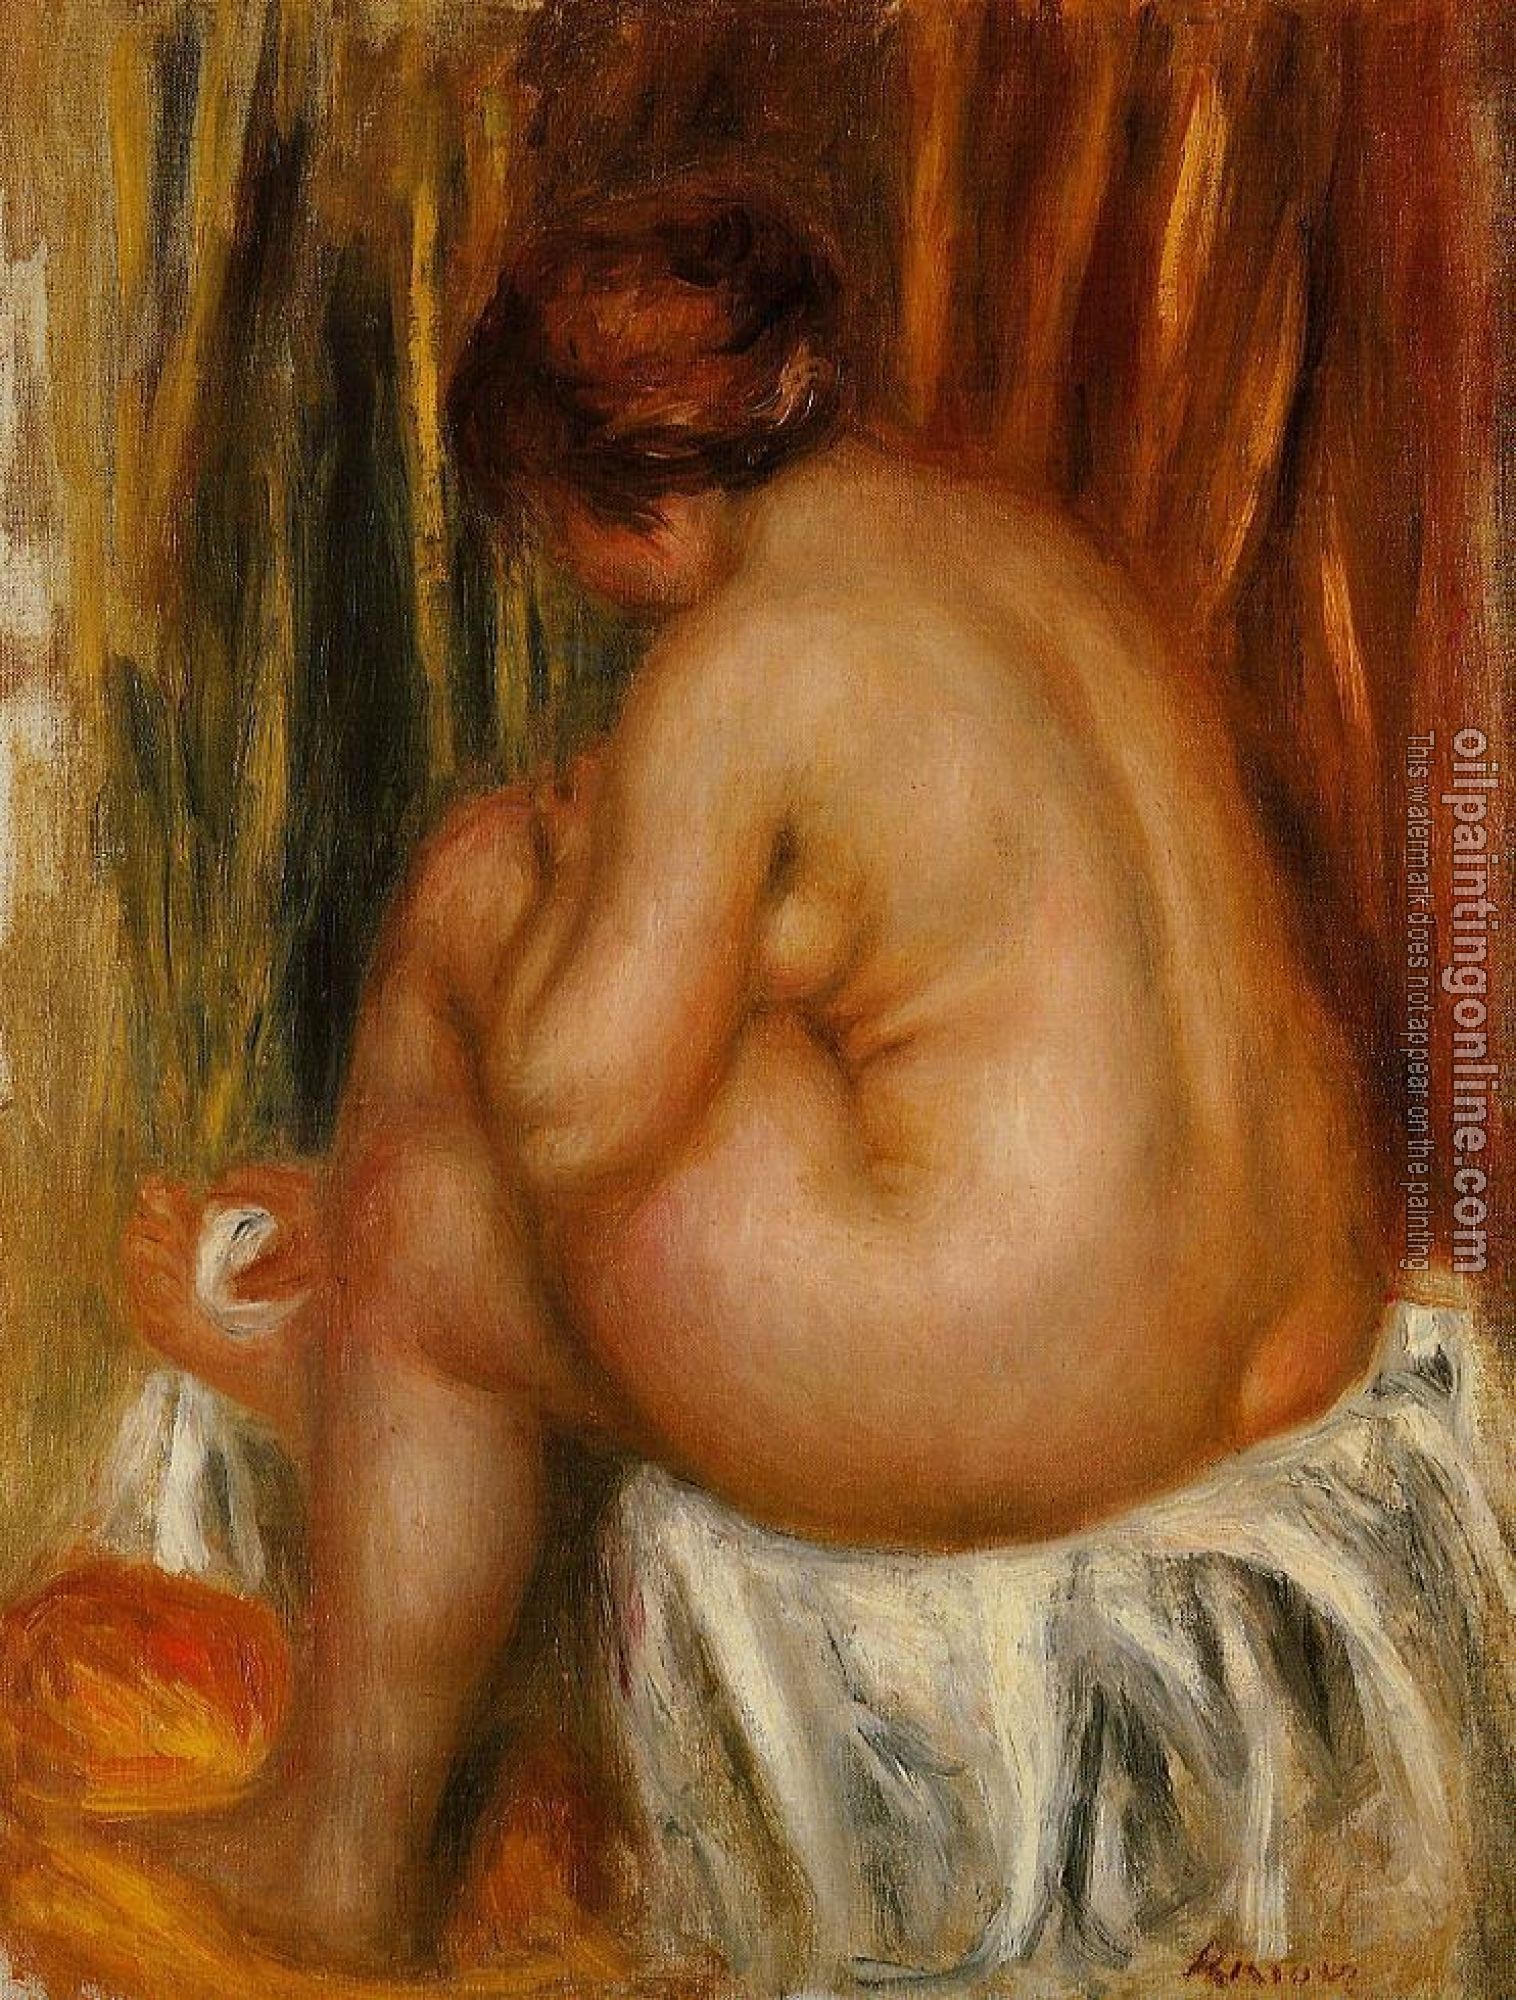 Renoir, Pierre Auguste - After Bathing